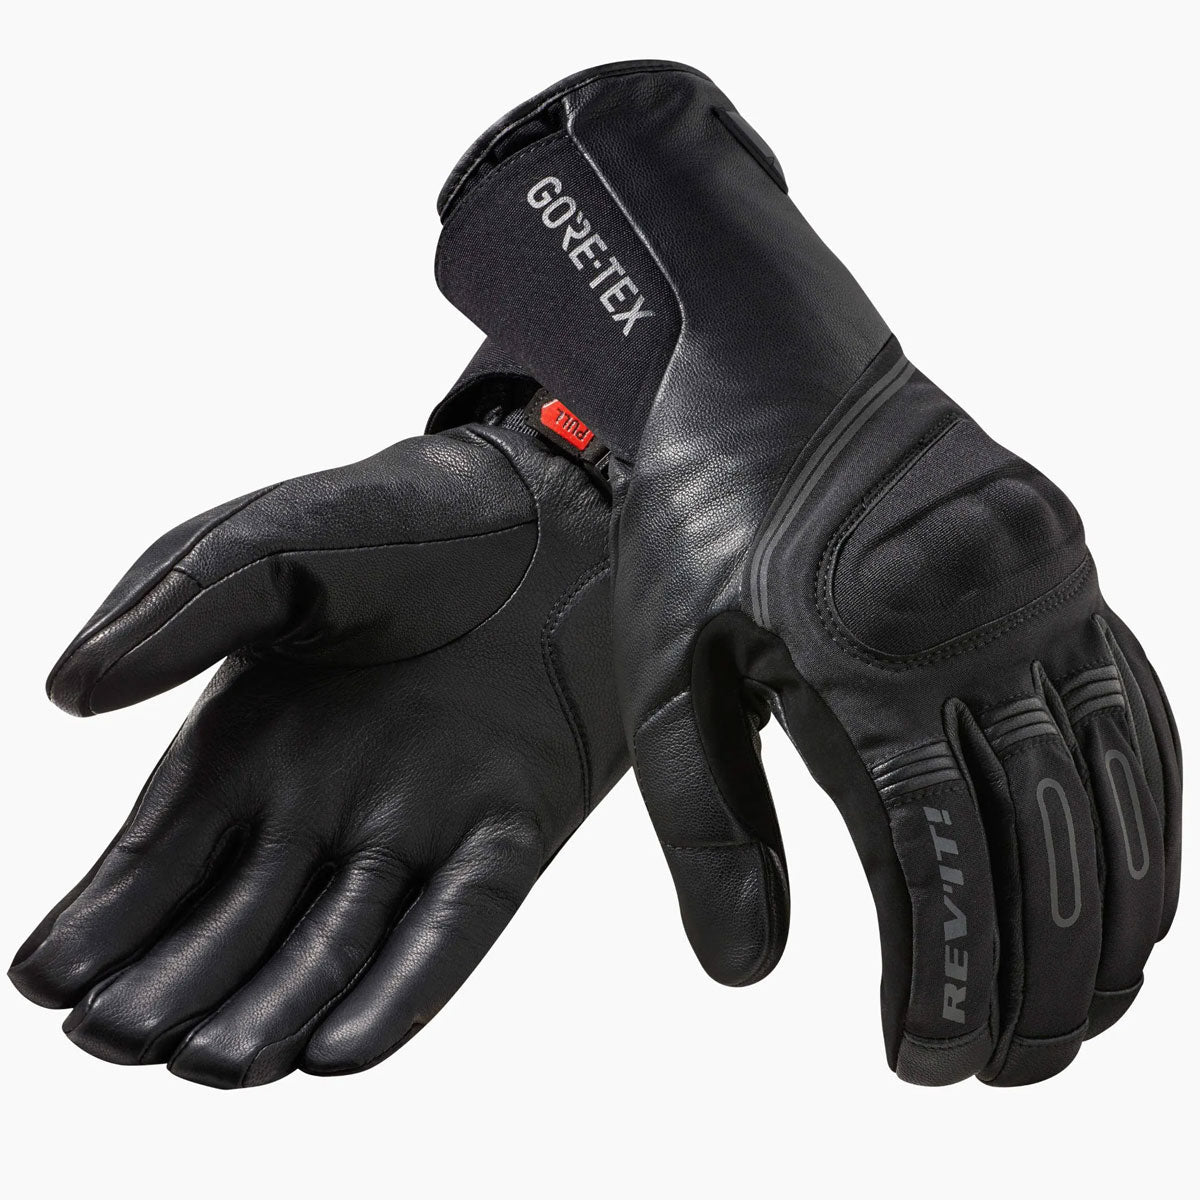 REV'IT! STRATOS 2 GTX Gloves